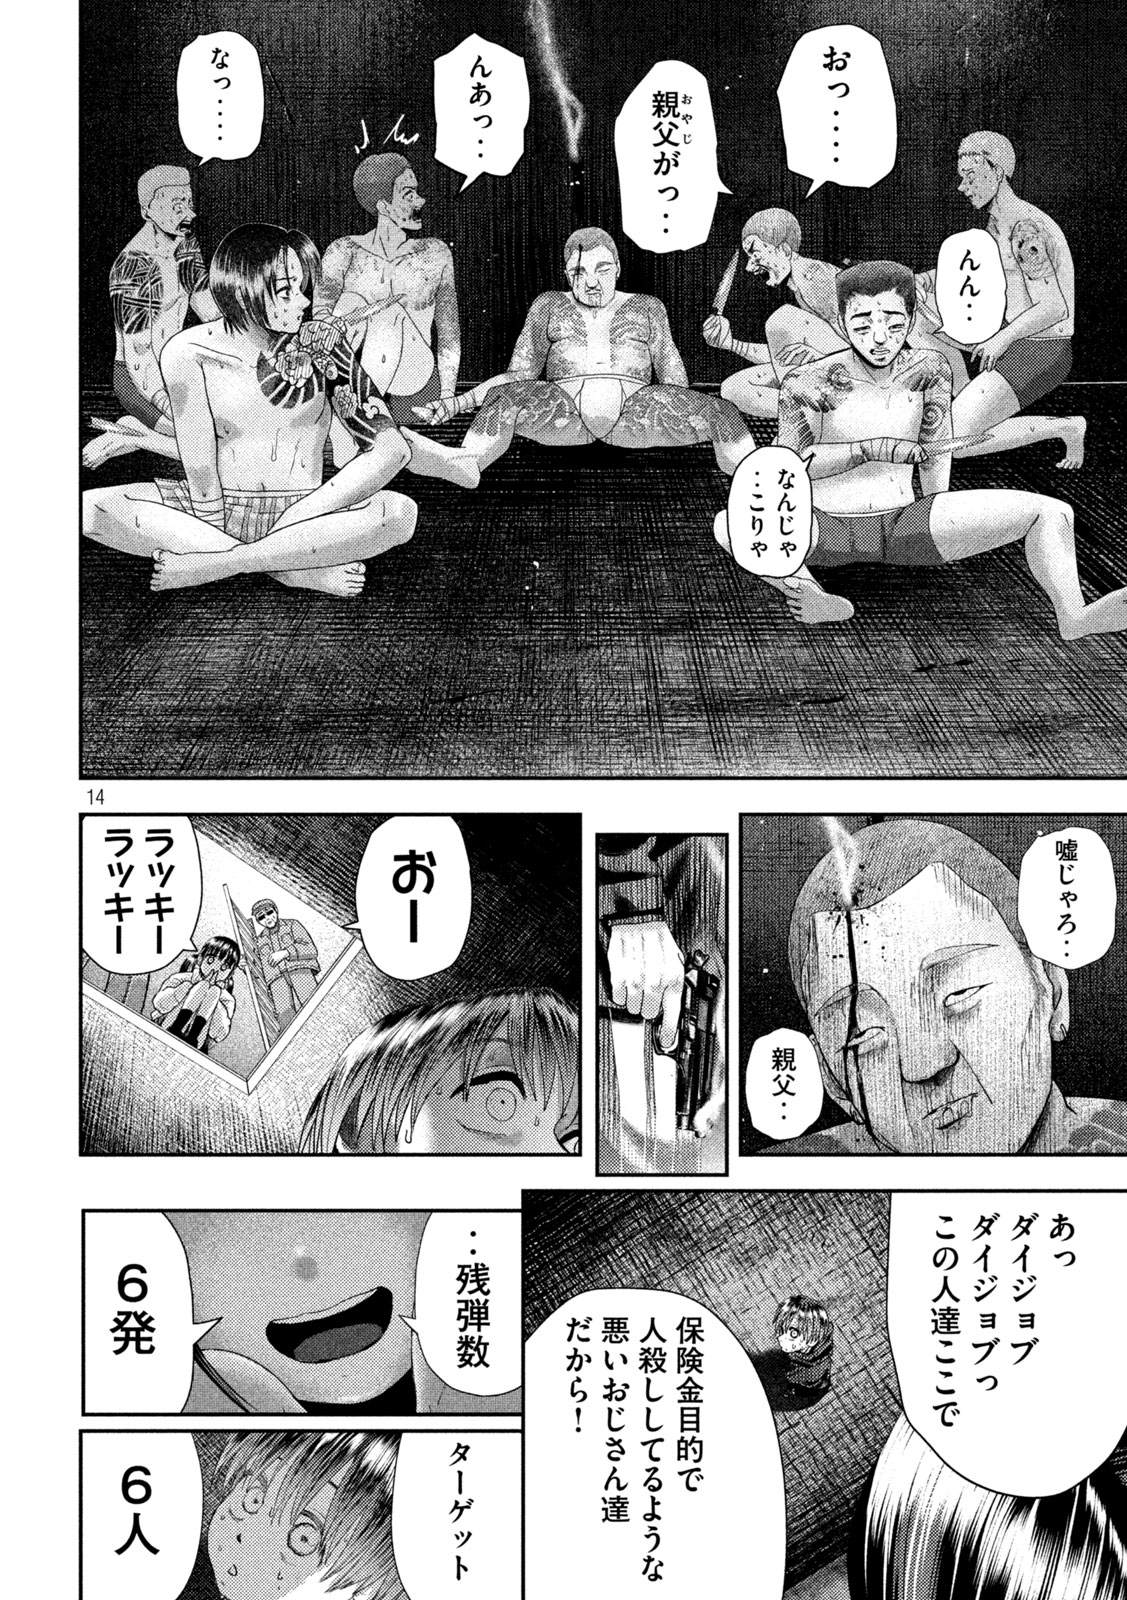 Nezumi no Koi - Chapter 32 - Page 14